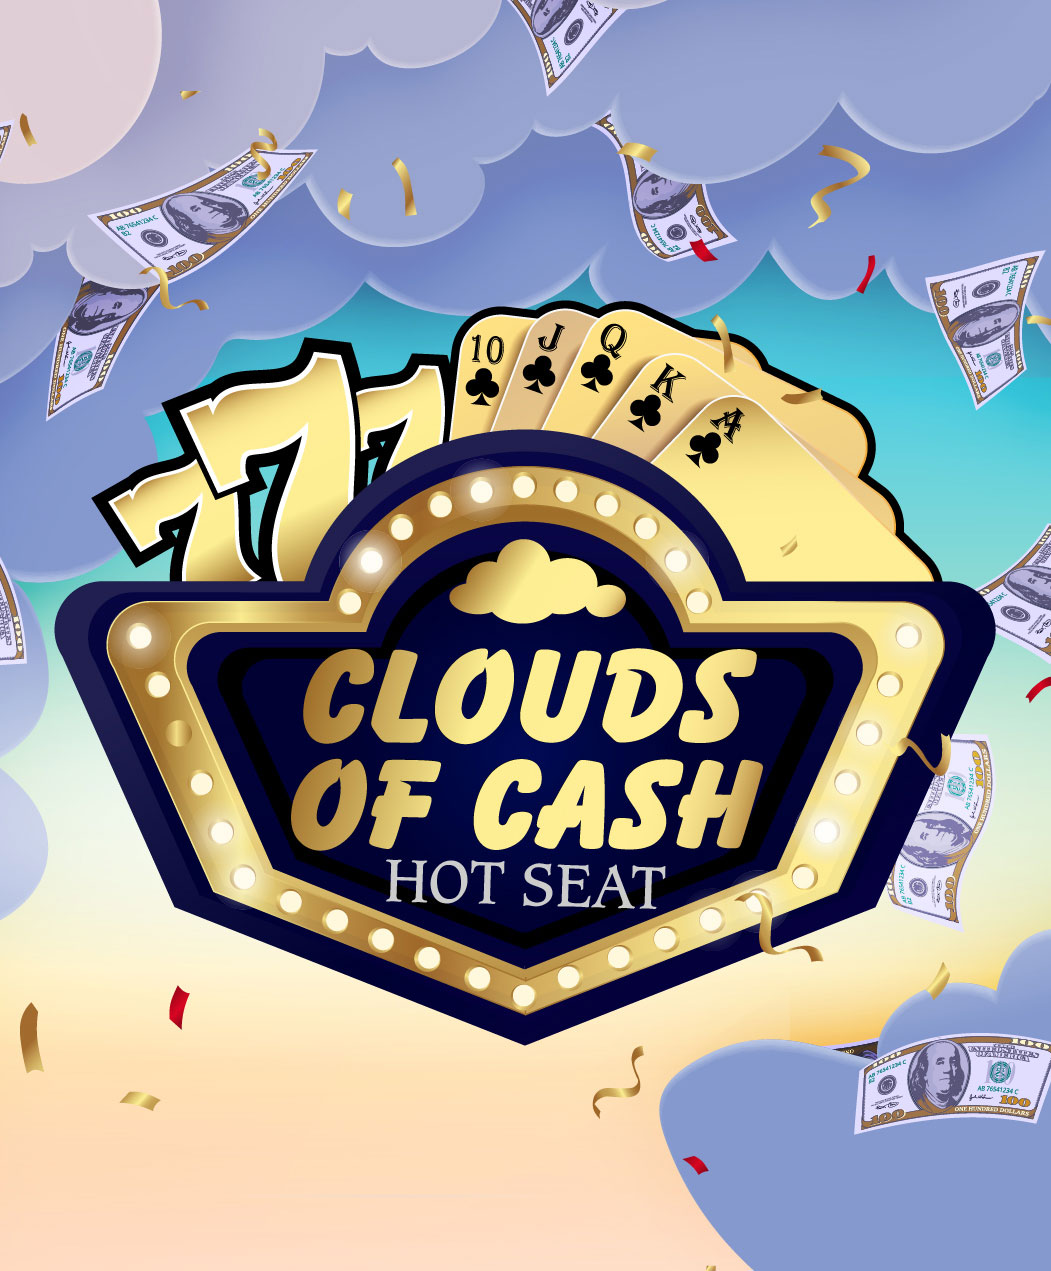 Clouds of Cash Hot Seat